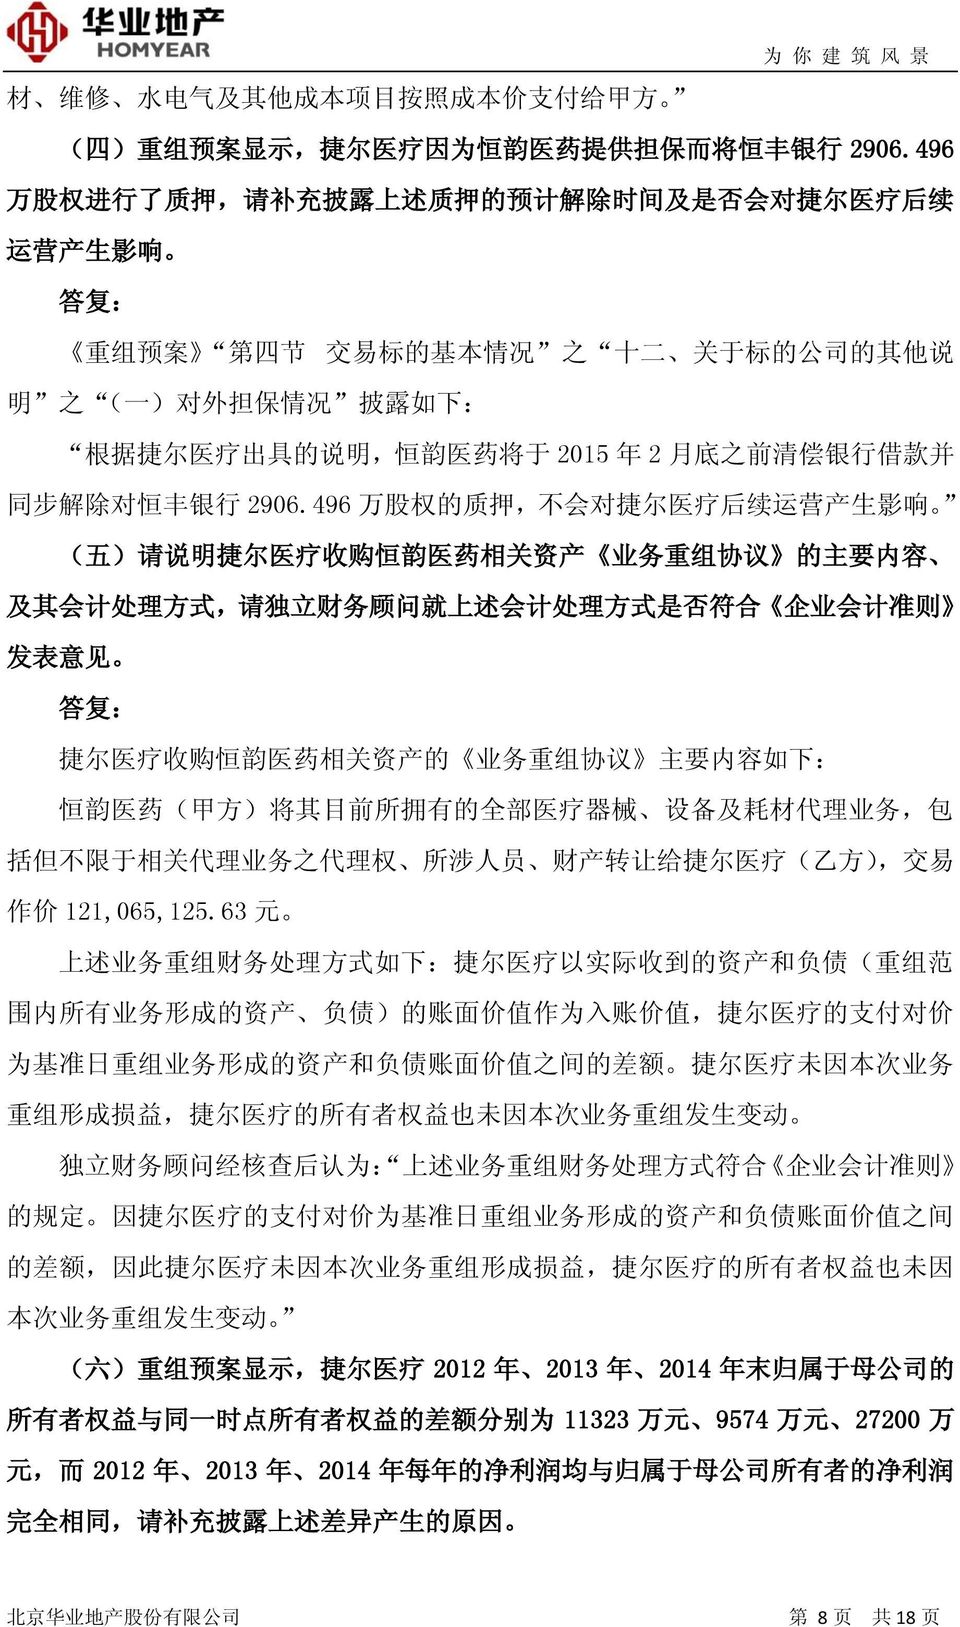 韵 医 药 将 于 2015 年 2 月 底 之 前 清 偿 银 行 借 款 并 同 步 解 除 对 恒 丰 银 行 2906.